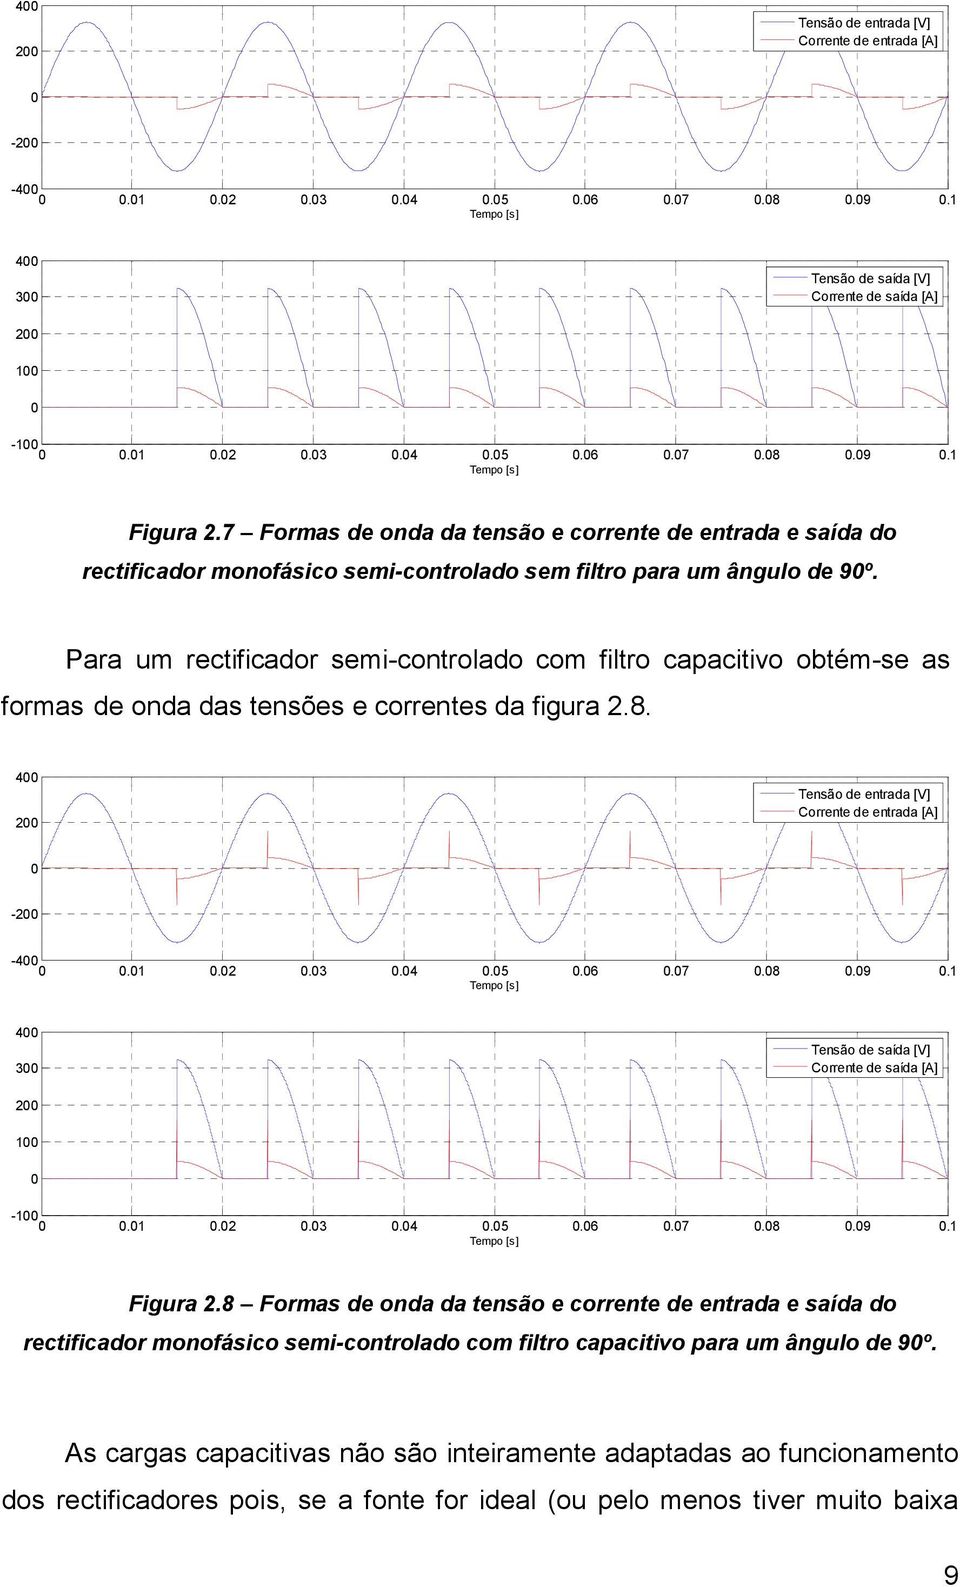 Para um rectificador semi-controlado com filtro capacitivo obtém-se as formas de onda das tensões e correntes da figura 2.8.